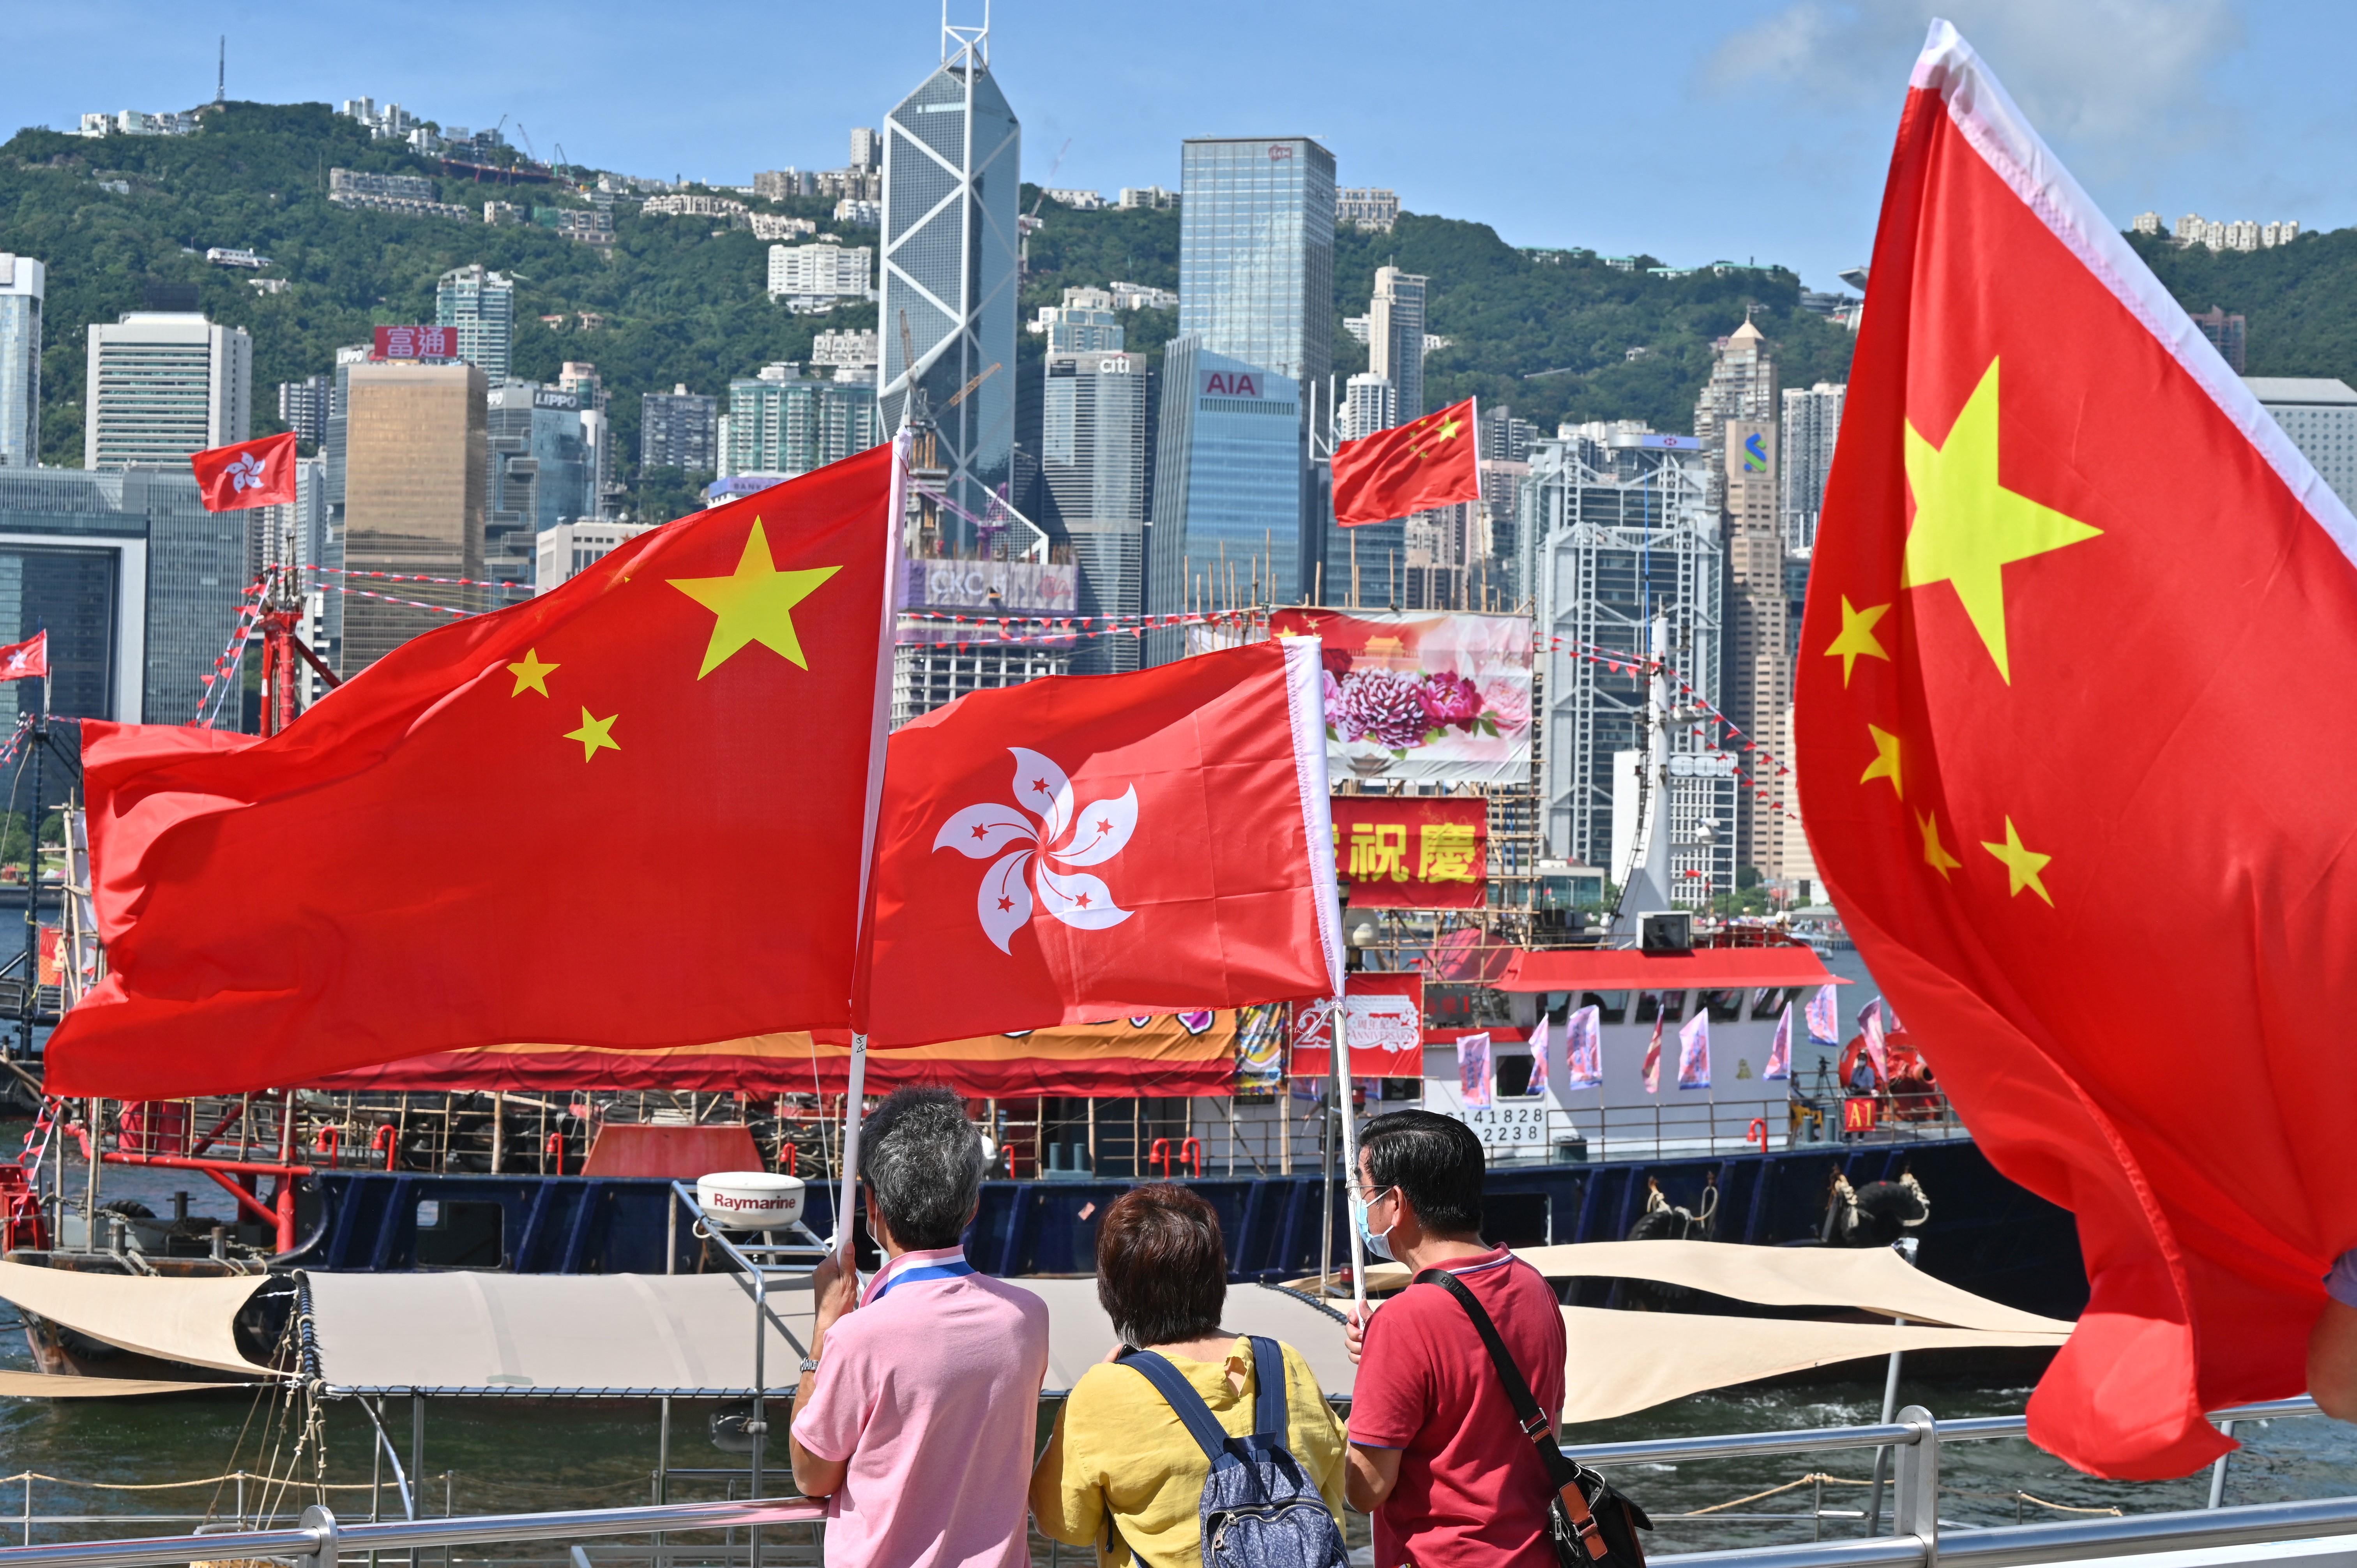 Tương lai Hồng Kông quốc kỳ: Với những biến động trong thế giới chính trị, tương lai của Hồng Kông quốc kỳ là một câu hỏi đầy báo hiệu. Nhưng đất nước này sẽ vượt qua mọi khó khăn để trở thành một quốc gia phát triển với lá cờ độc đáo thể hiện sự đoàn kết và tình yêu với đất nước.